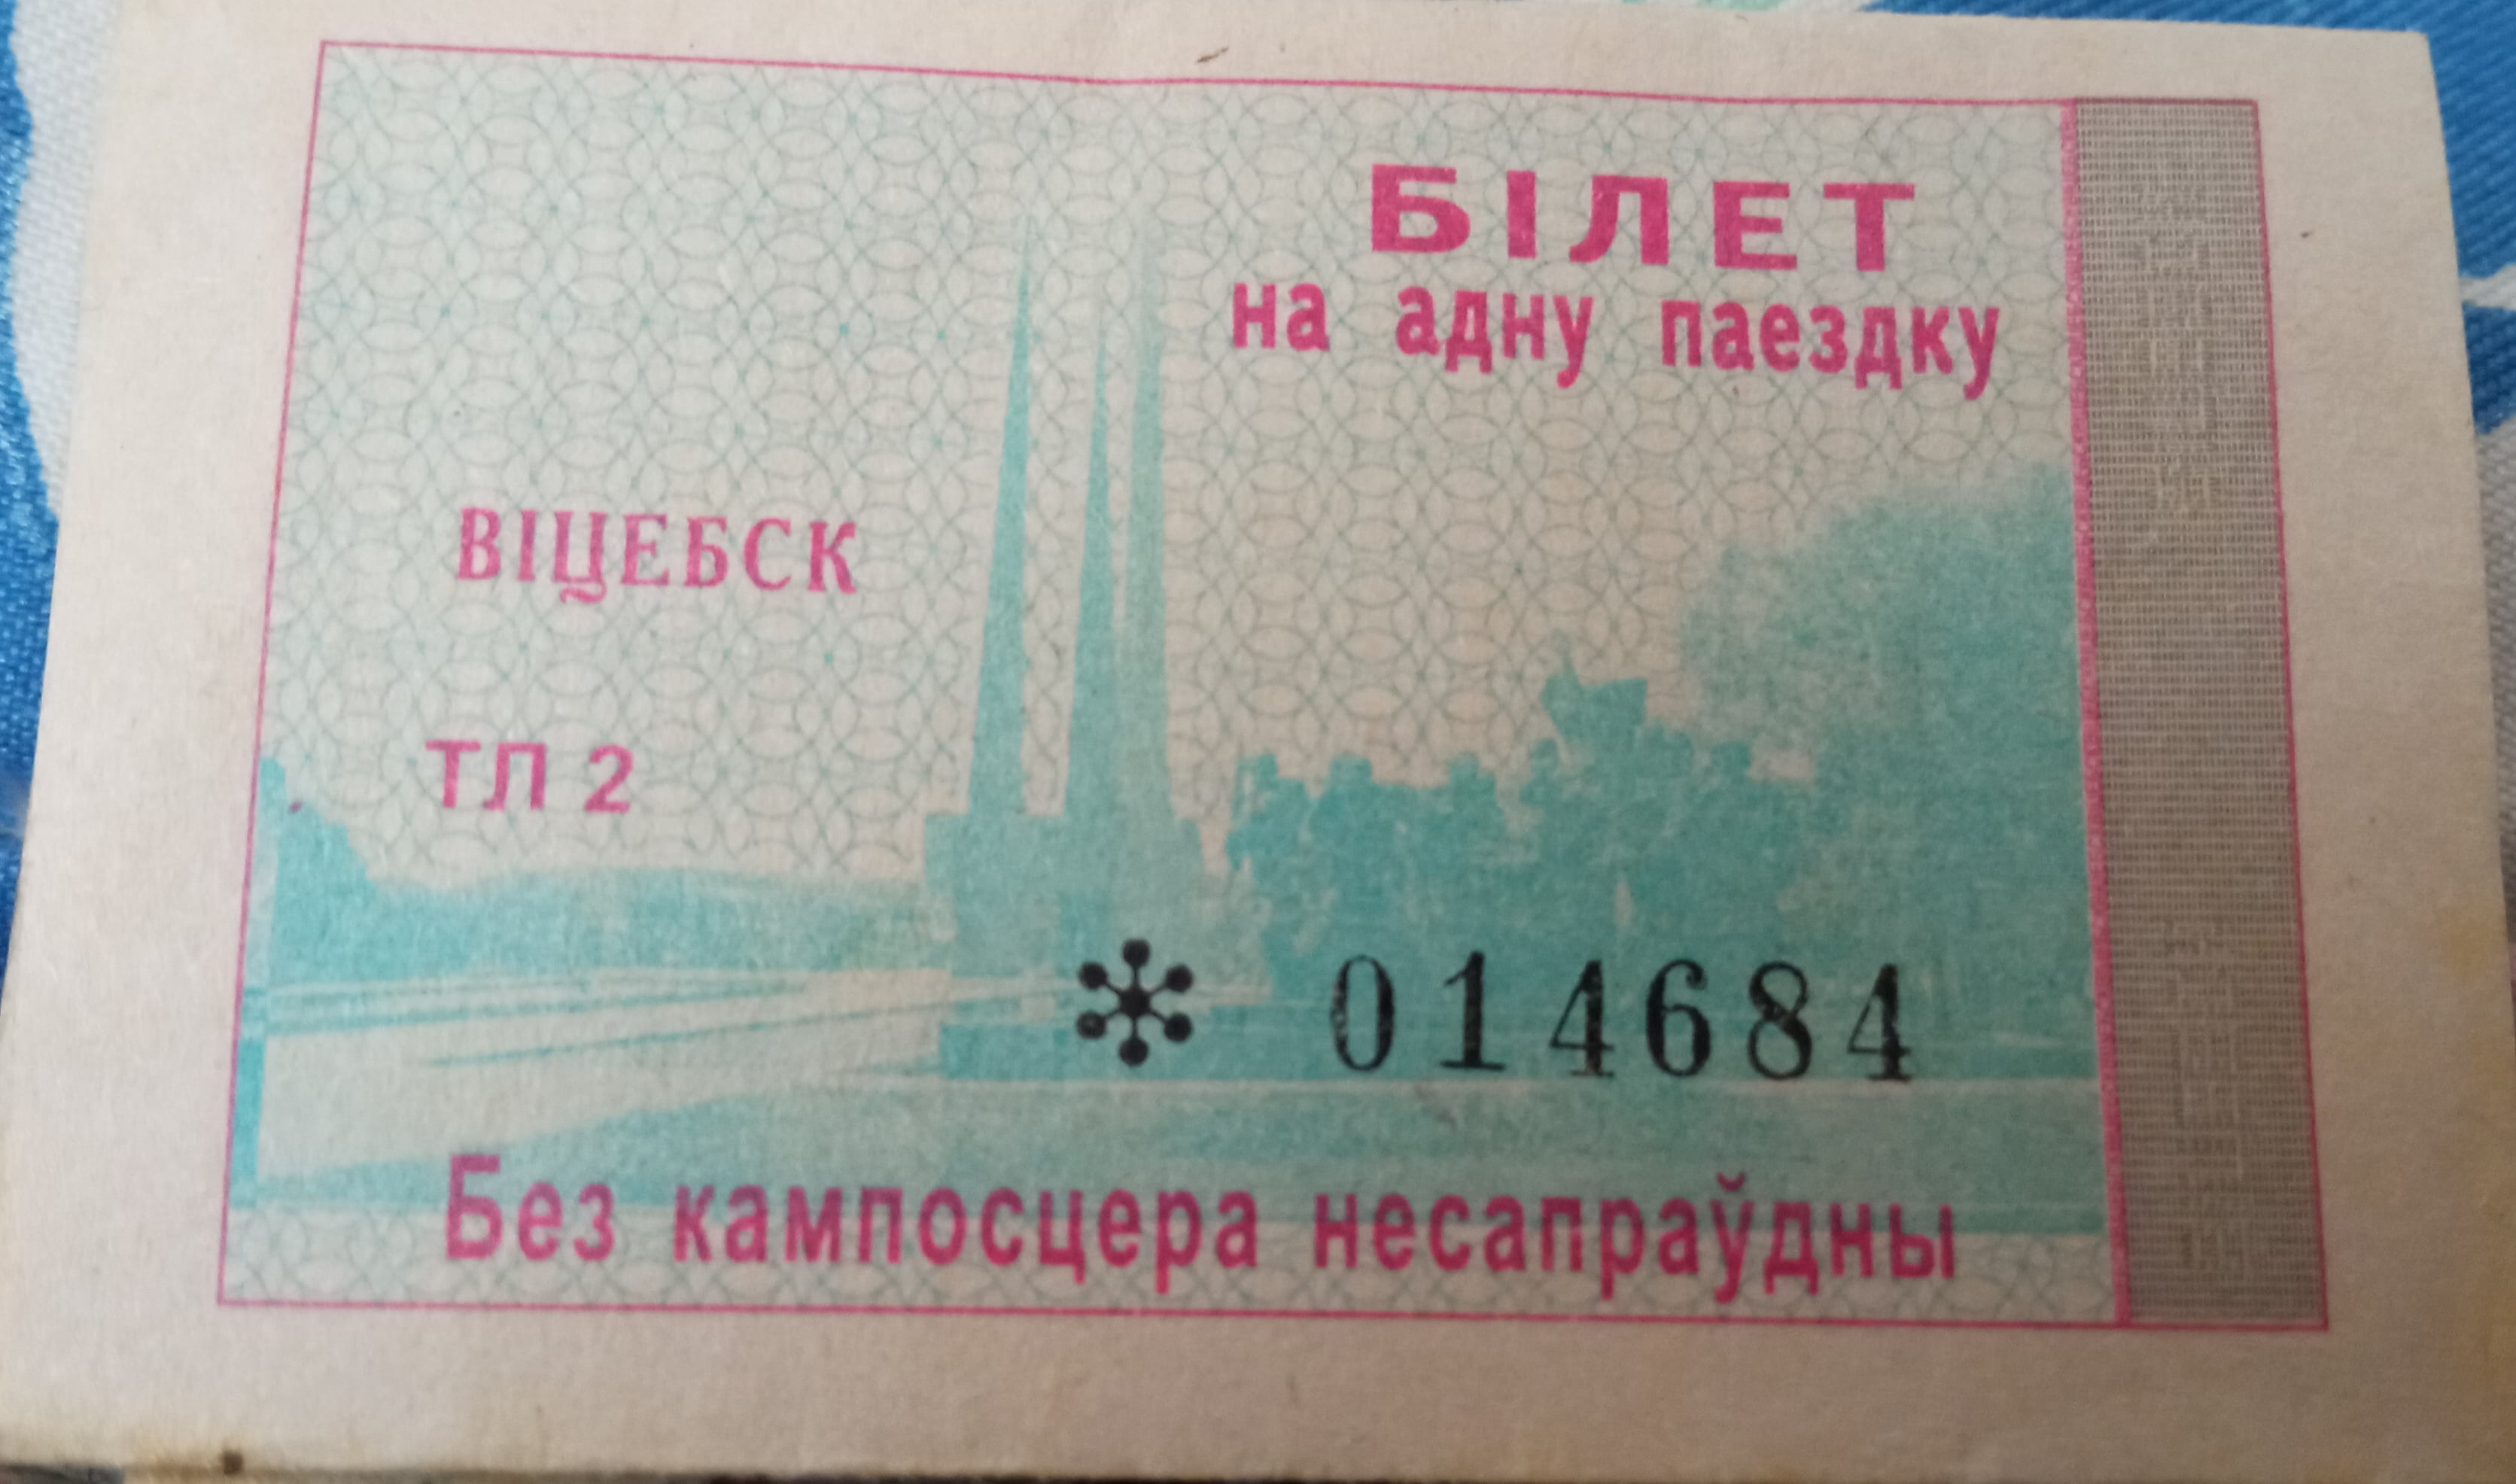 Vitebsk — Tickets